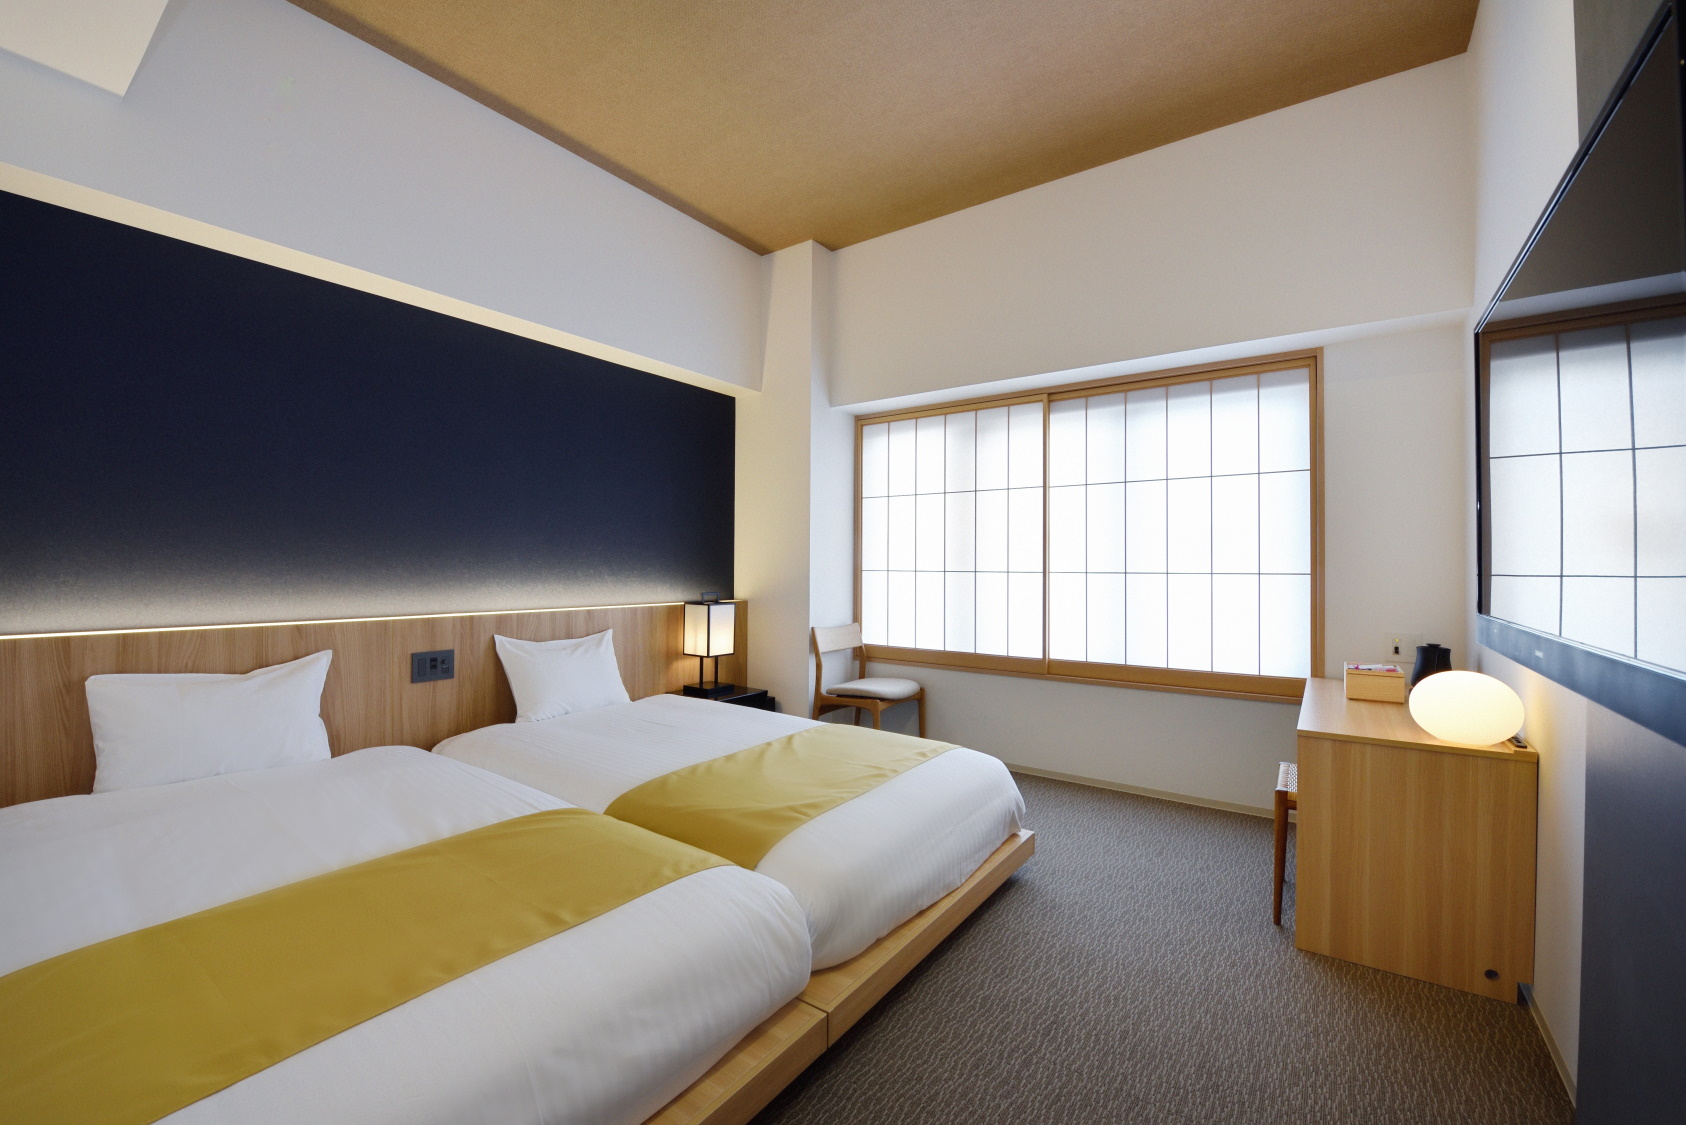 京都街宿五条大橋の客室の写真